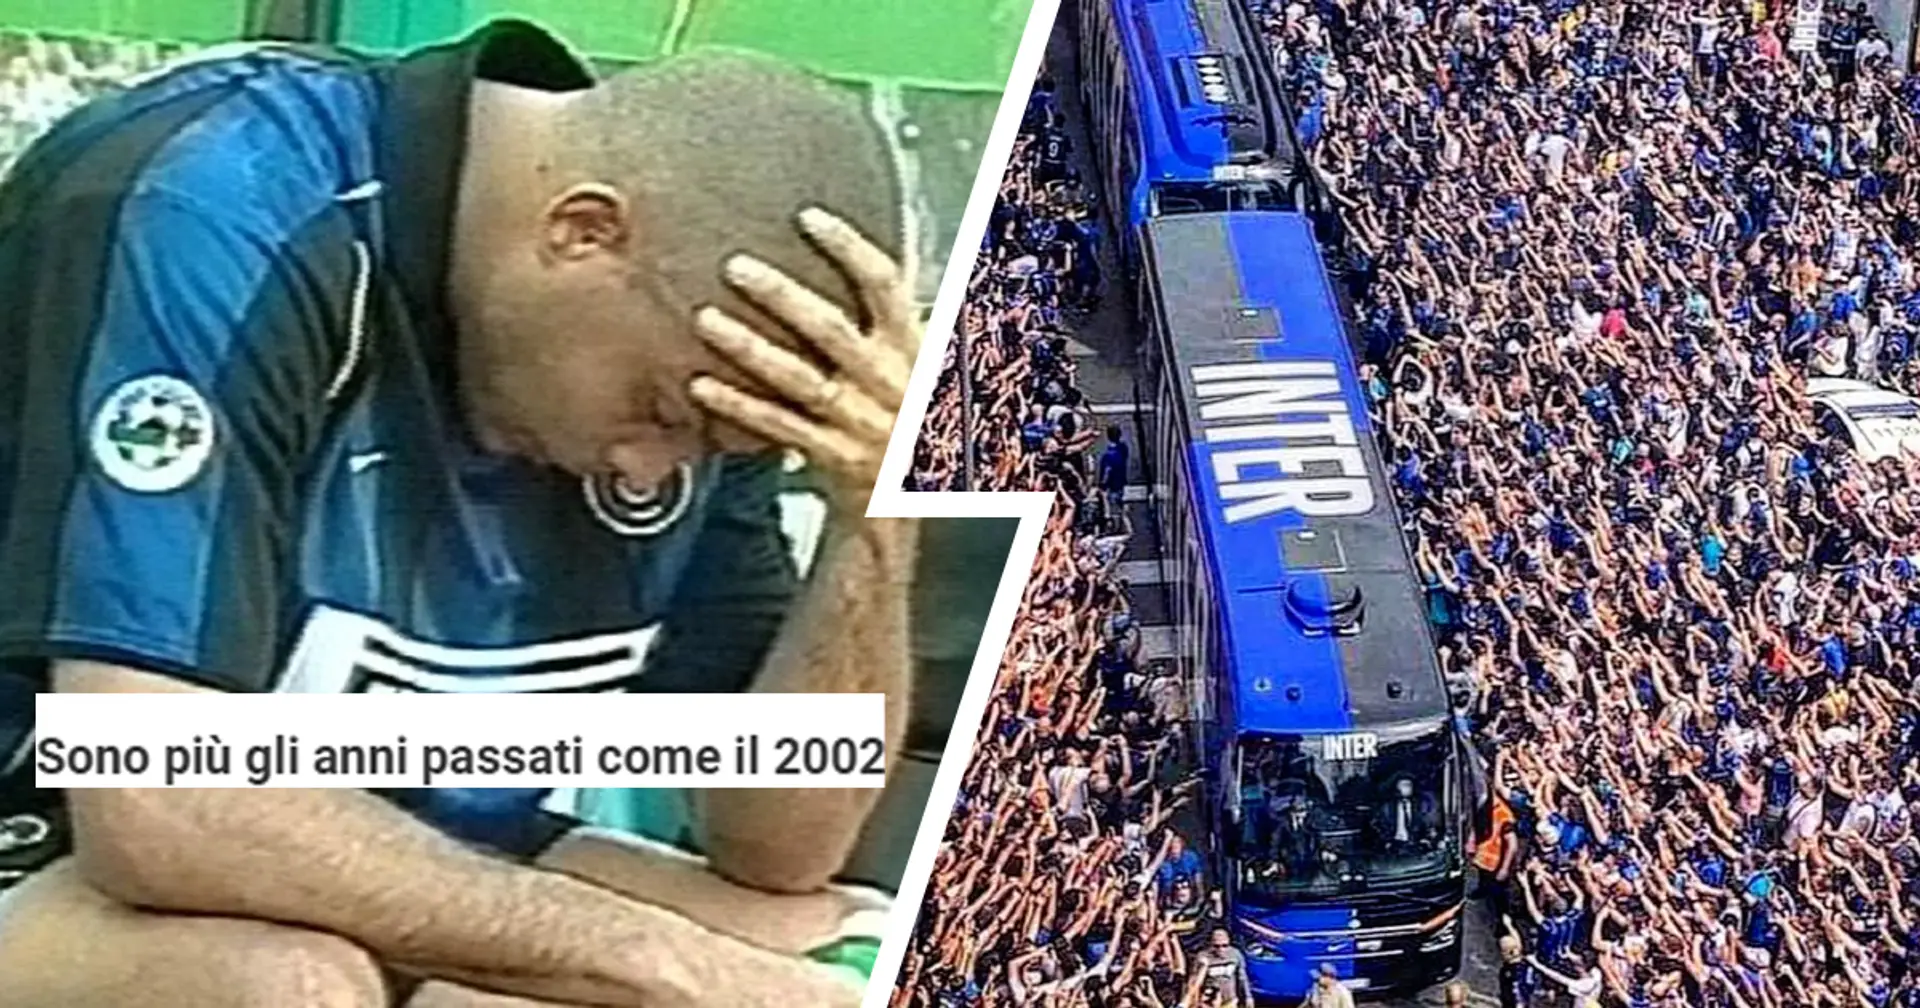 "Sono più gli anni passati come il 2002": la reazione dei tifosi della Juventus al 'compleanno' dell'Inter